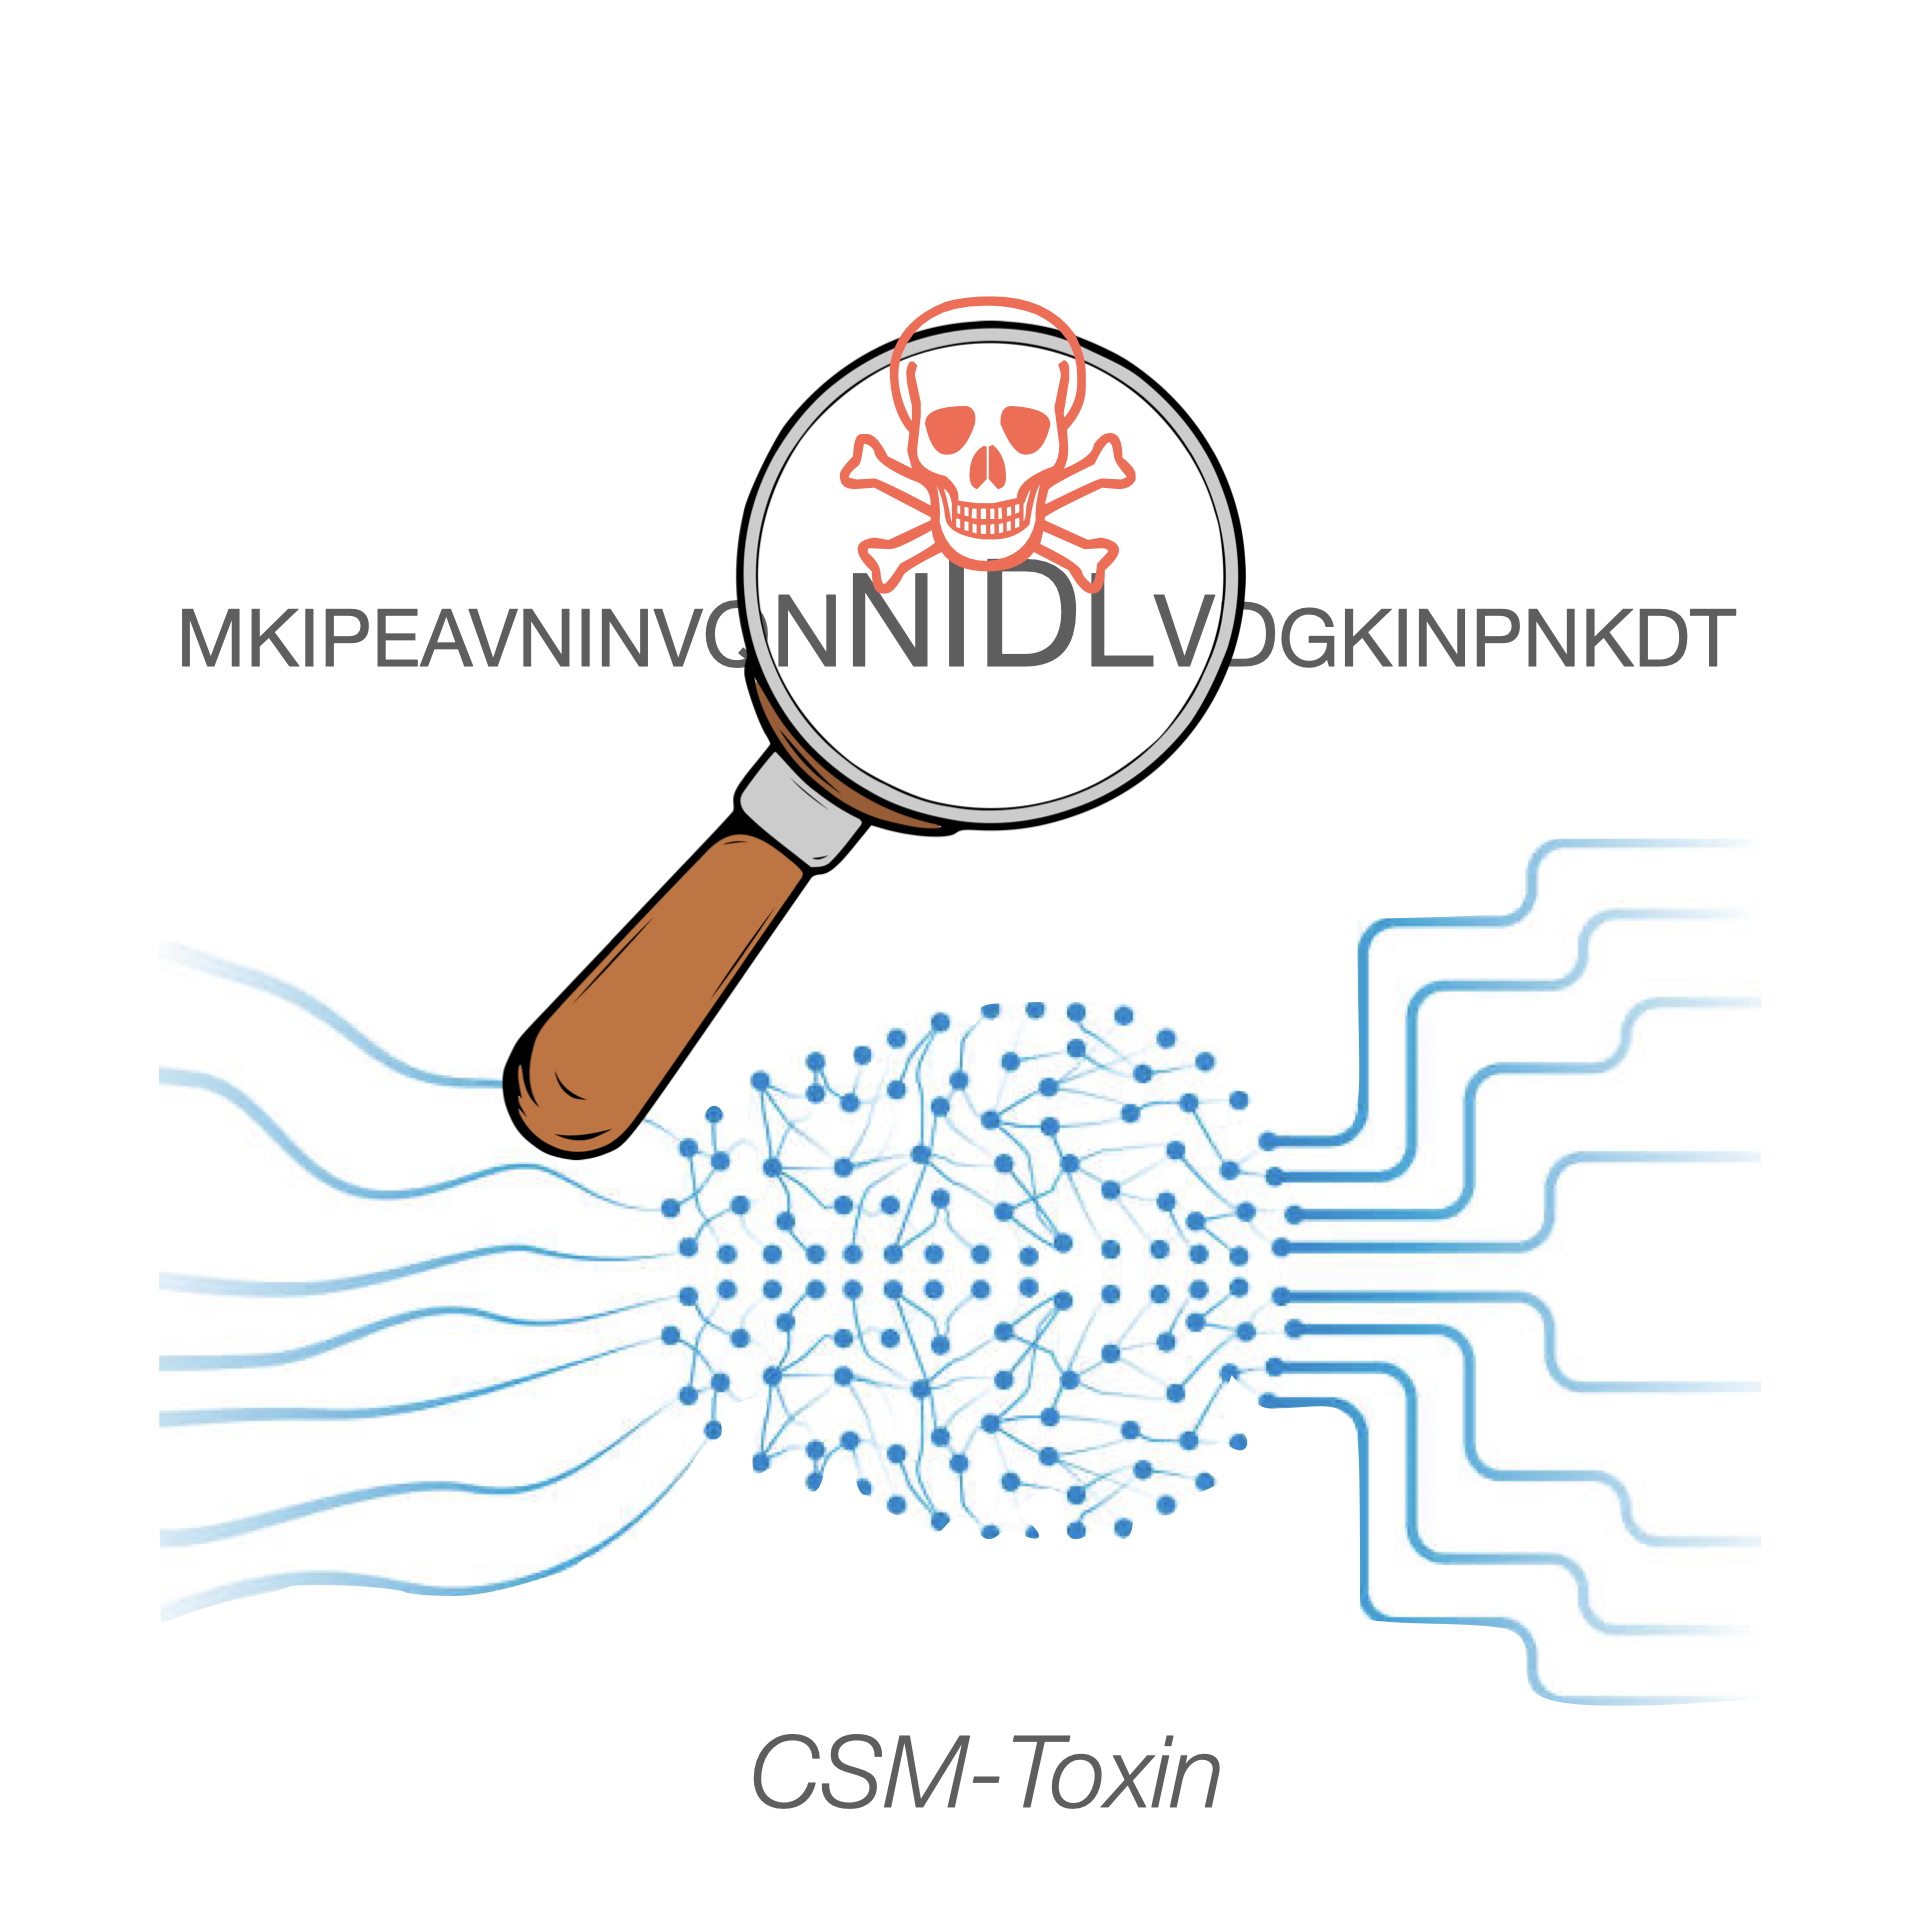 CSM-Toxin workflow